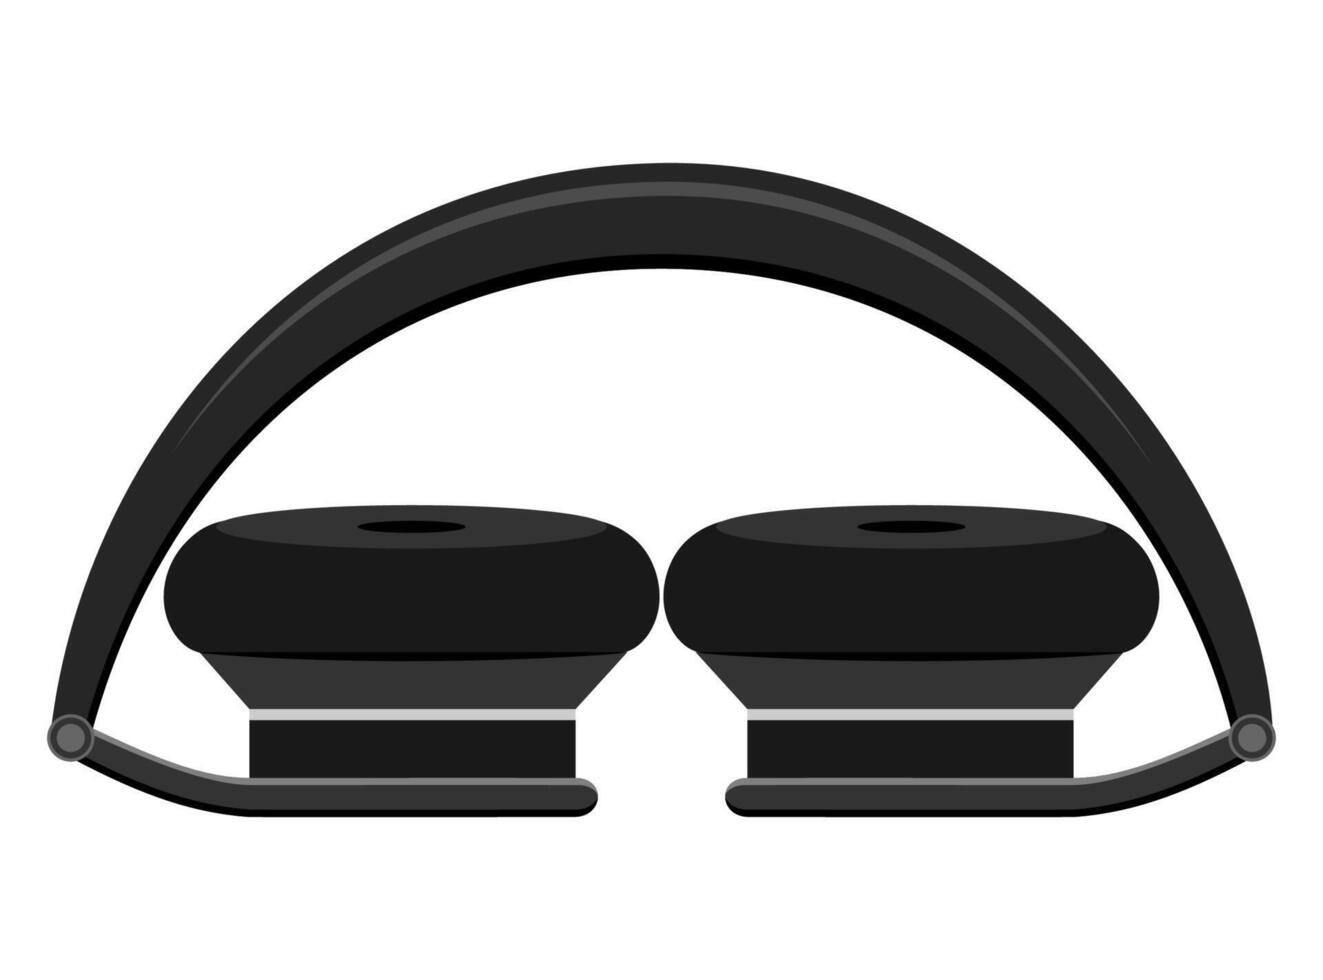 ilustração vetorial realista de estoque de fones de ouvido preto isolada no fundo branco vetor